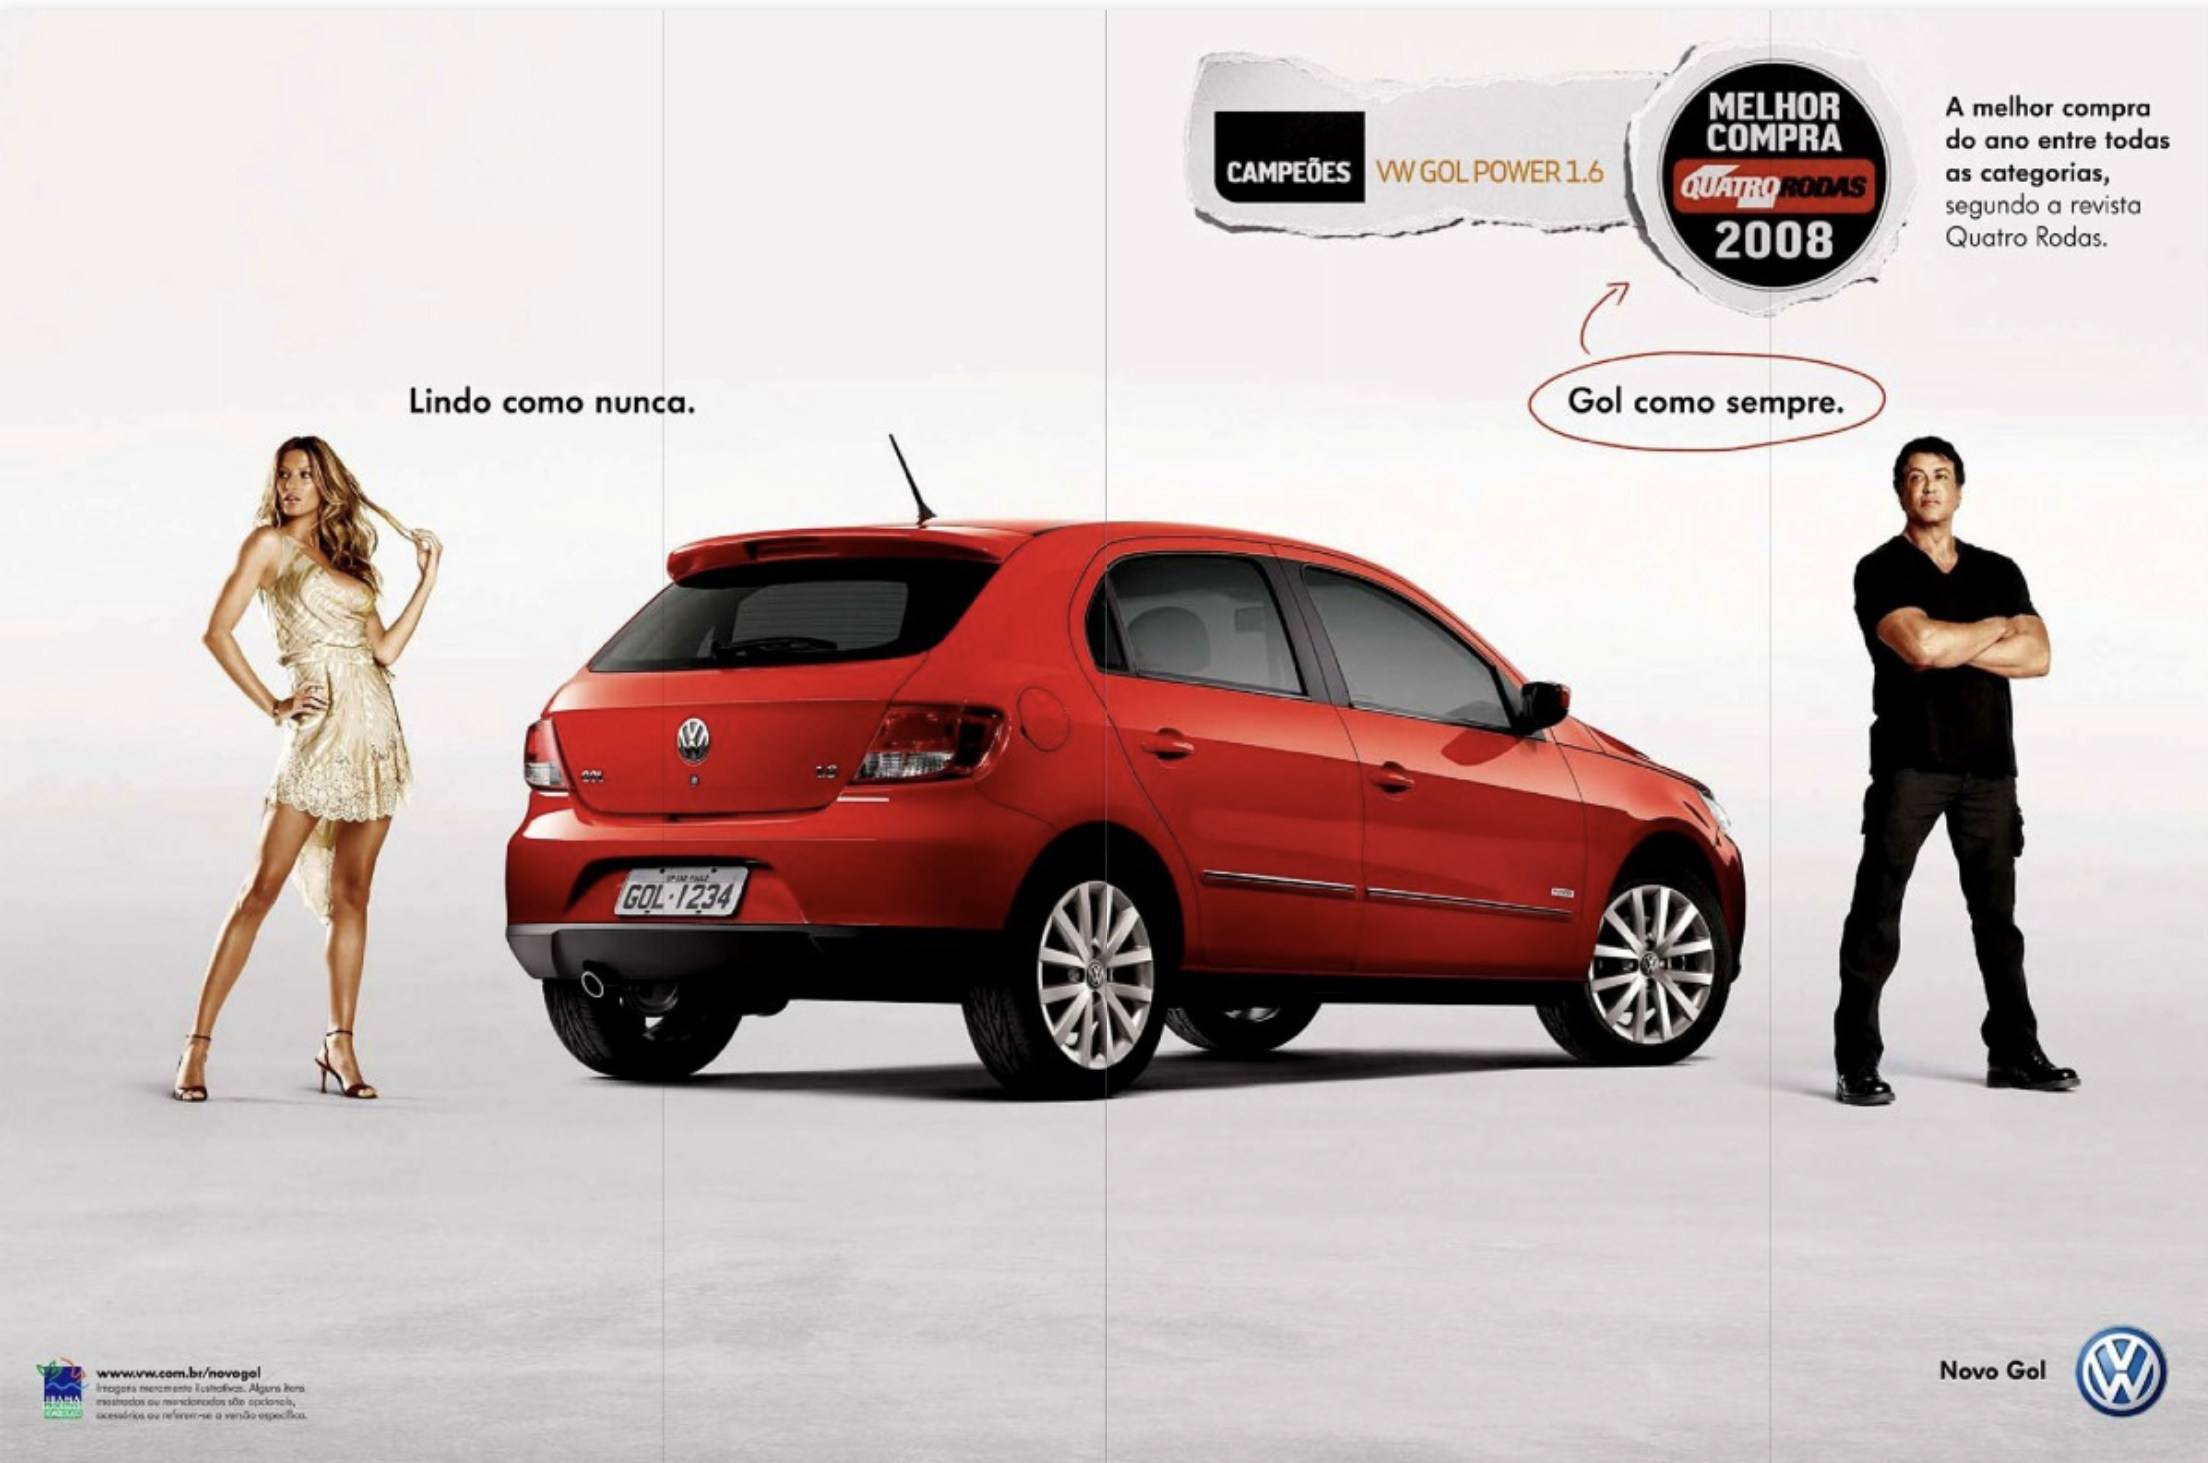 Campanha da Volkswagen promovendo a nova linha do Gol no ano de 2008